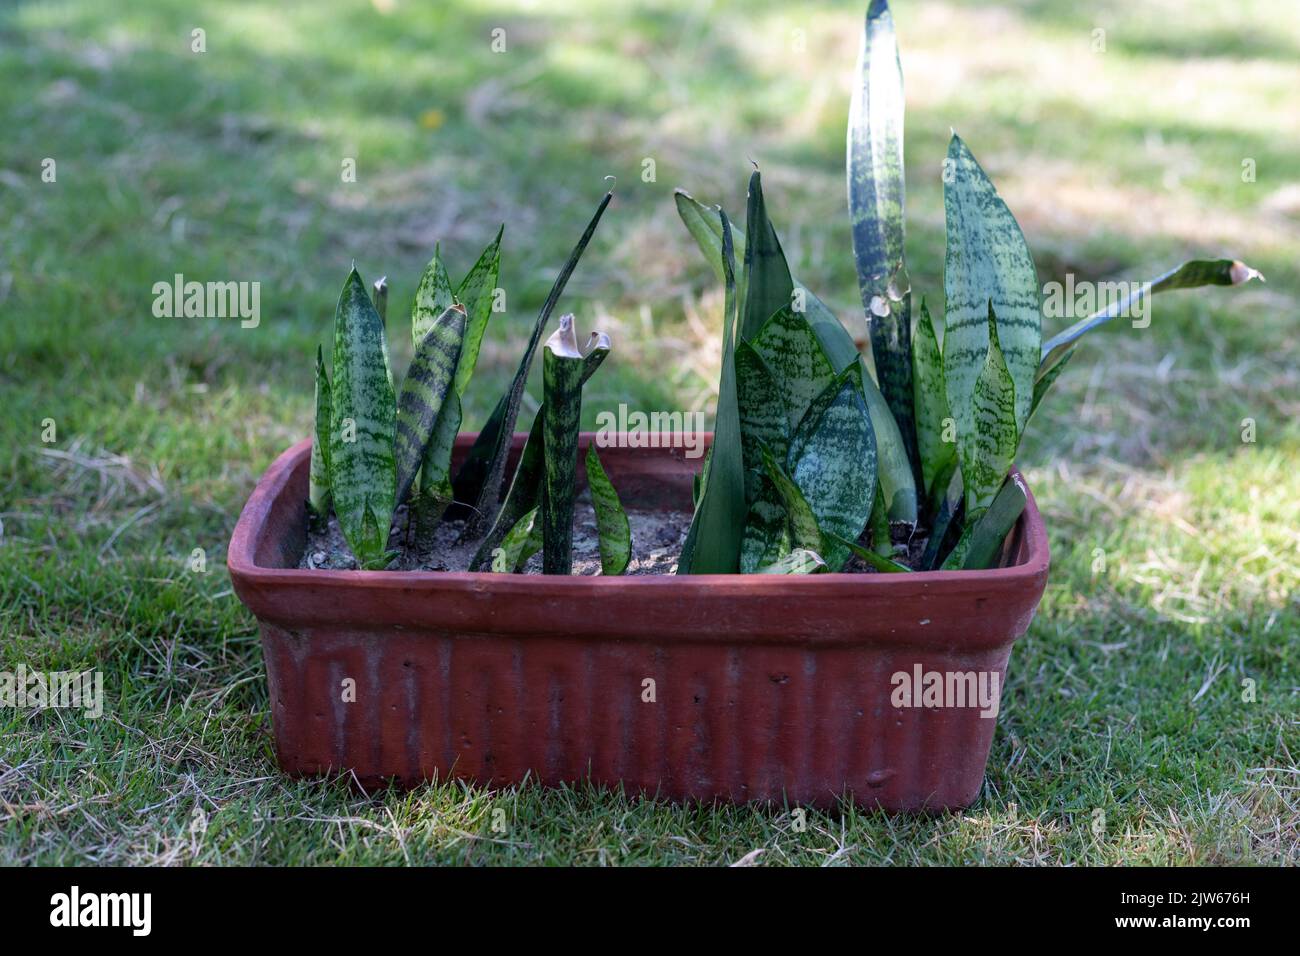 Planta de Sansevieria creciendo en una olla de arcilla Foto de stock